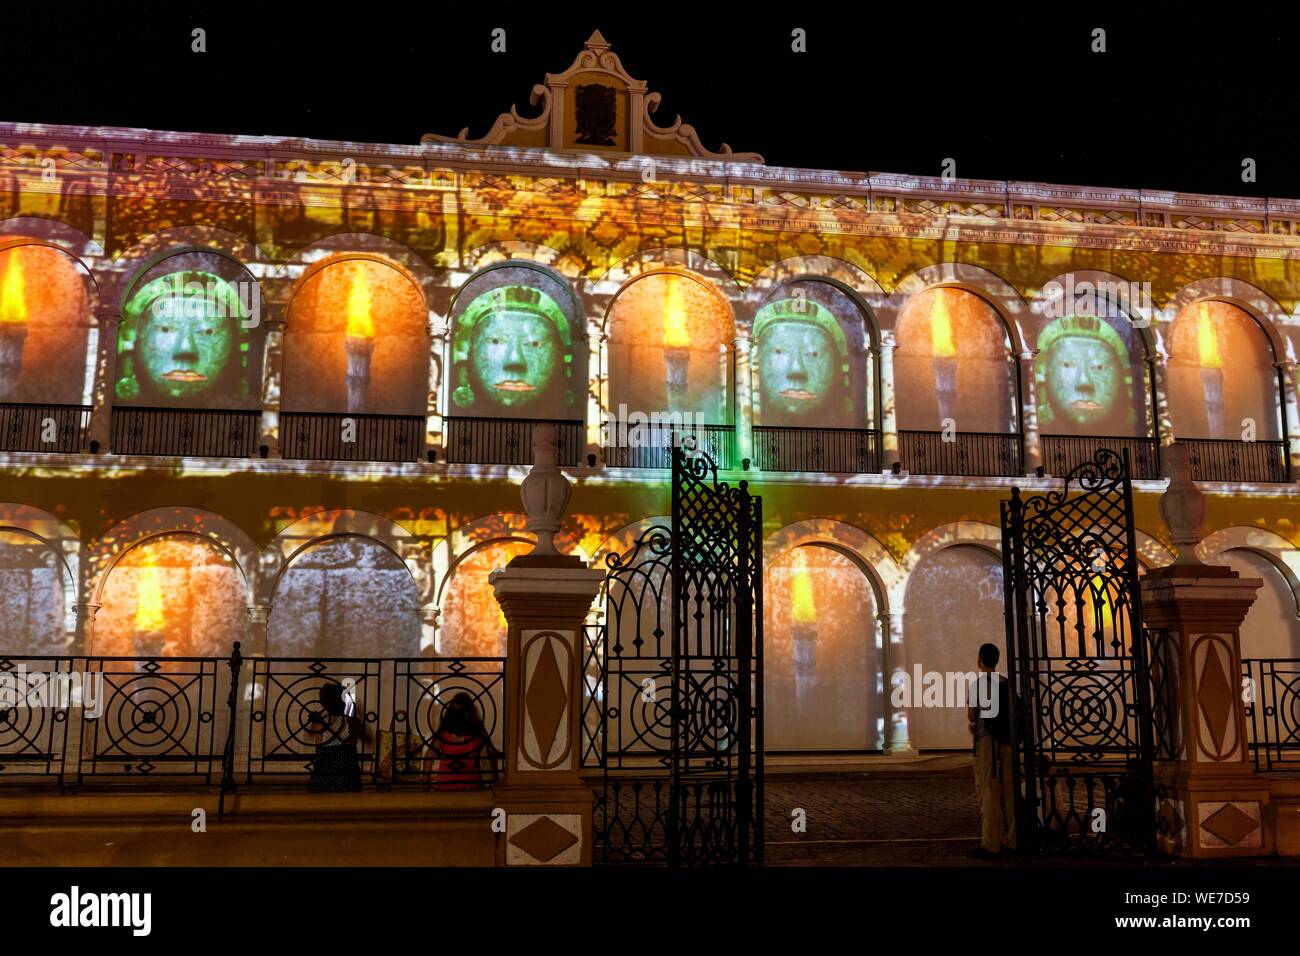 Le Mexique, l'État de Campeche, Campeche, ville fortifiée inscrite au Patrimoine Mondial de l'UNESCO, l'hôtel de ville façade de nuit Banque D'Images